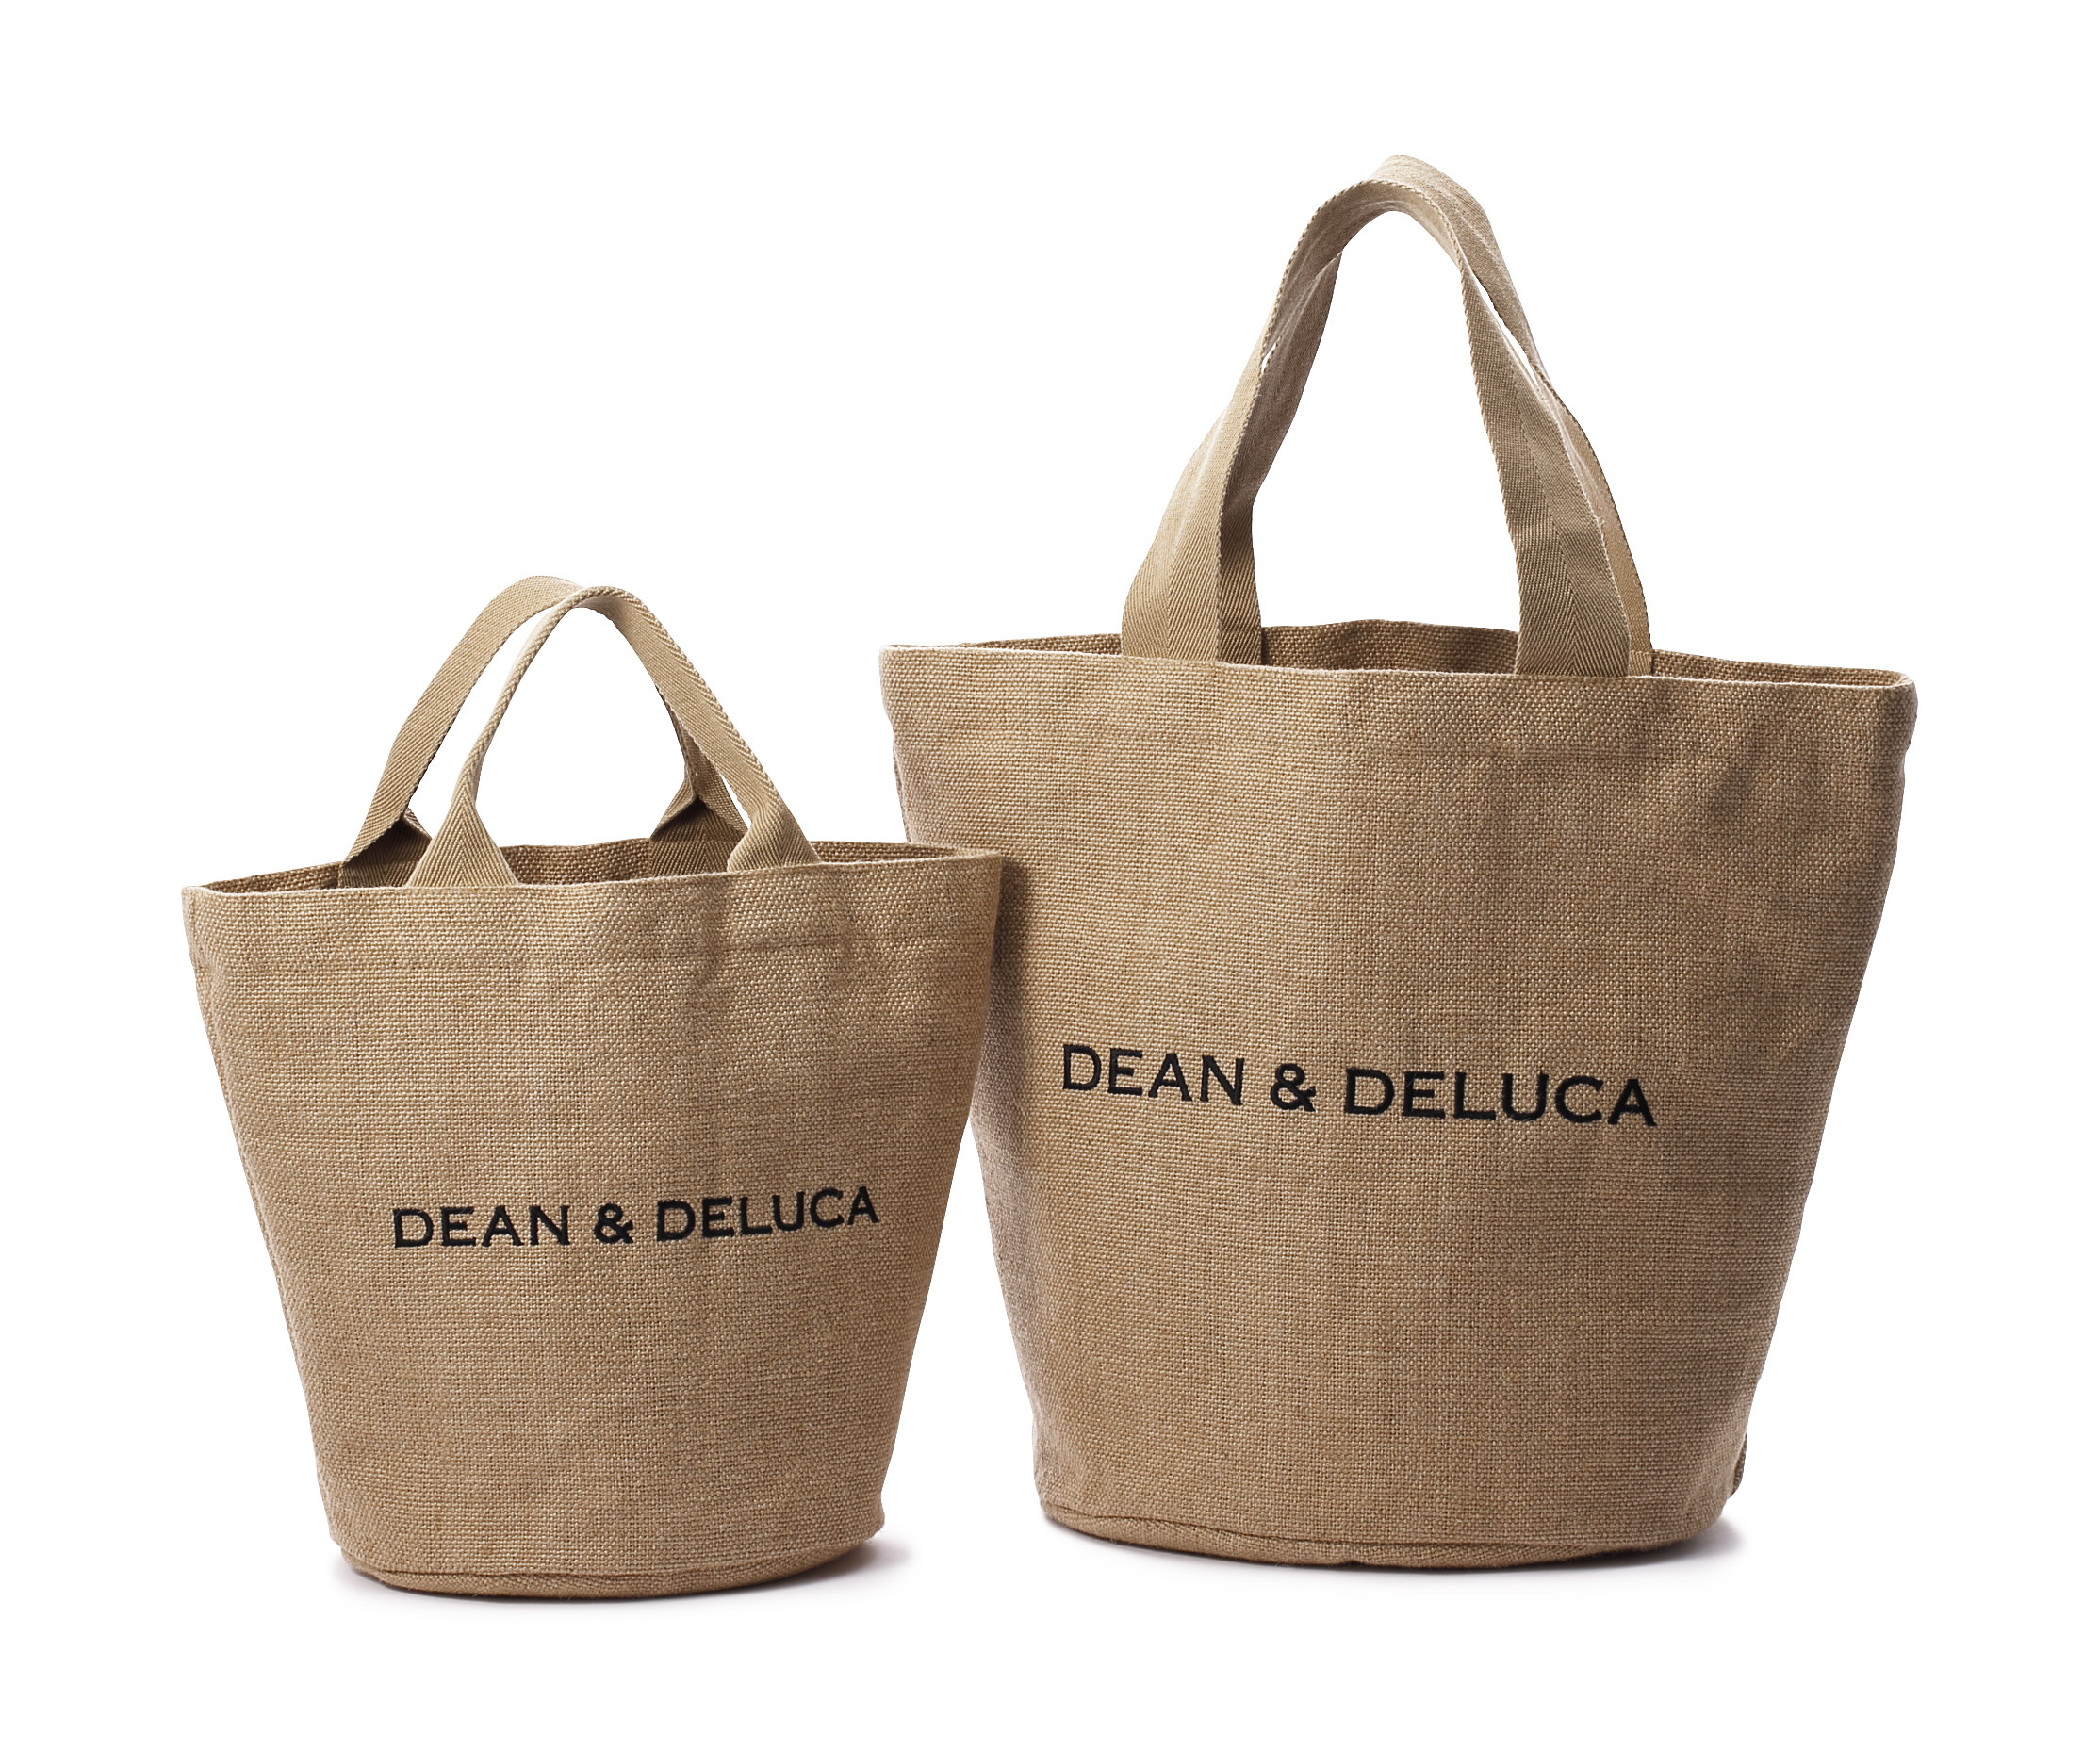 DEAN & DELUCA 日本上陸20周年記念「ジュート トートバッグ」販売 